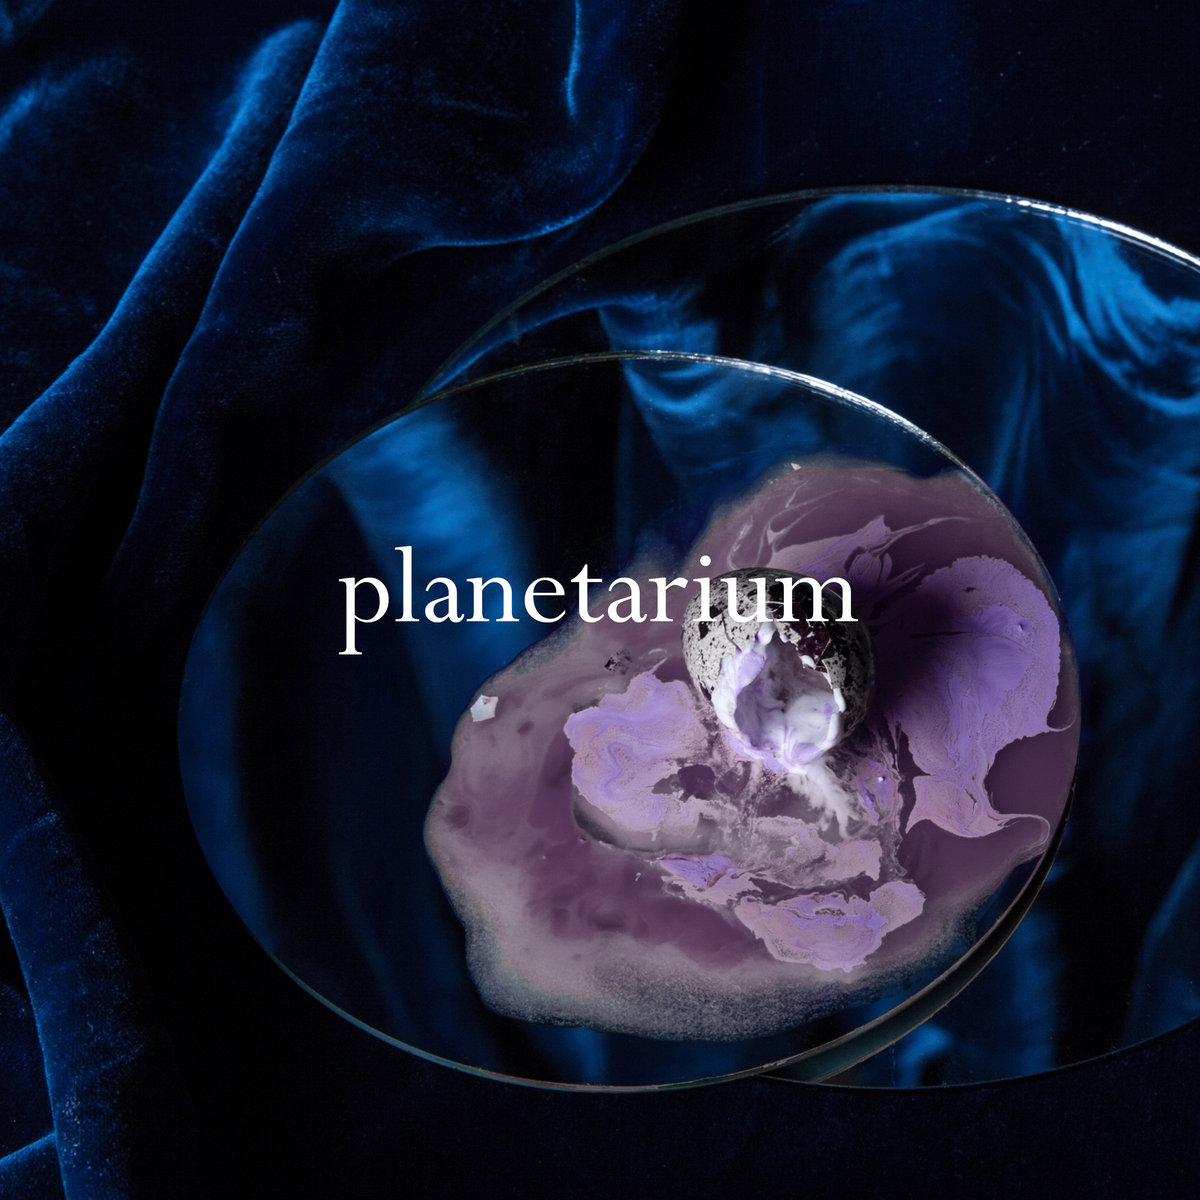 Slothrust Planetarium cover artwork